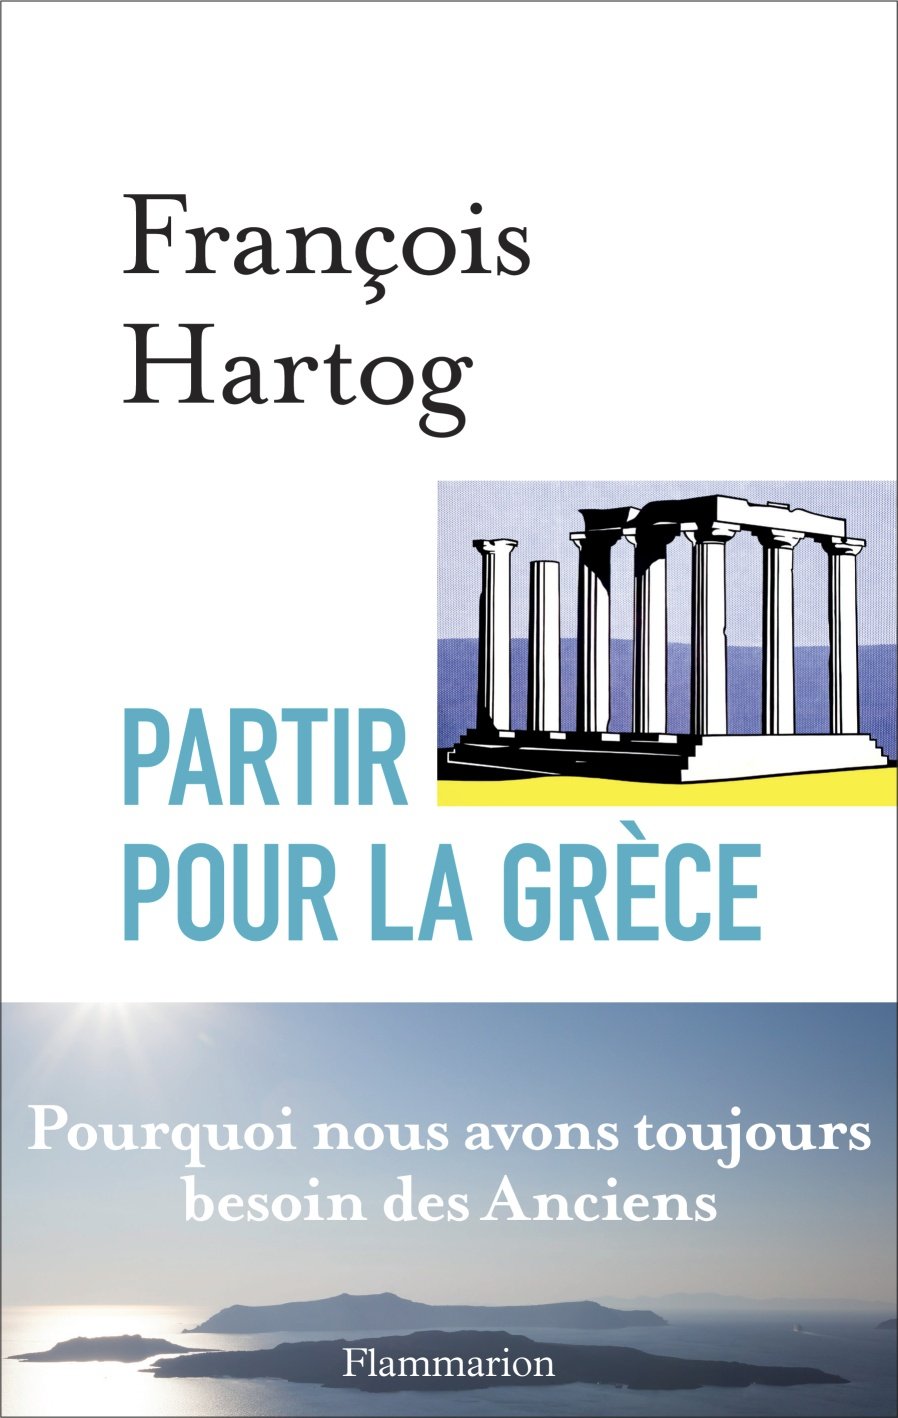 Partir pour la Grèce. Pourquoi nous avons toujours besoin des anciens, 2015, 288 p.